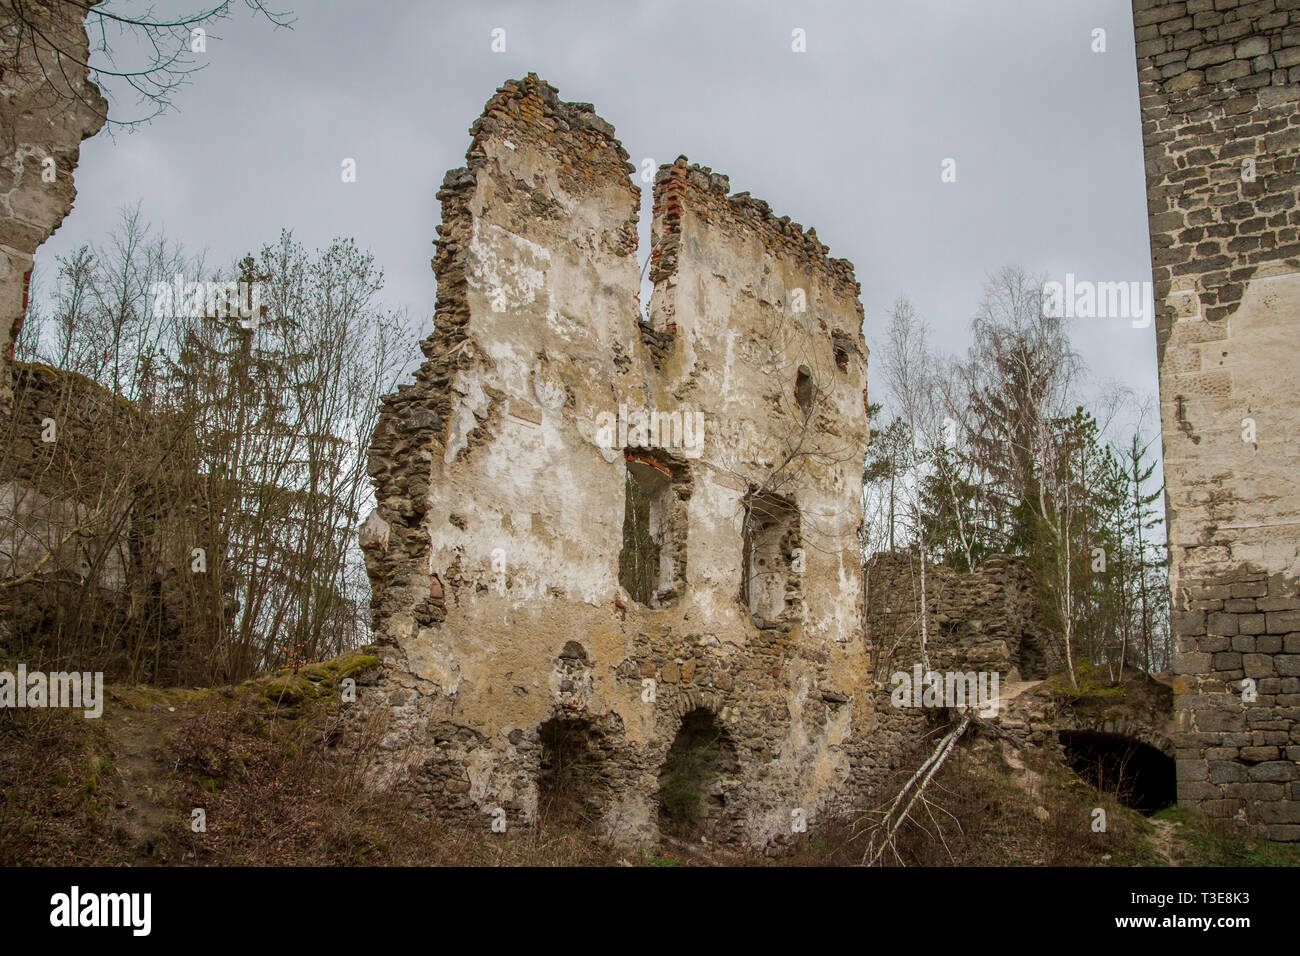 Burgruine (castle ruin) Lichtenfels, Ottensteiner Stausee, Zwettl, Austria Stock Photo